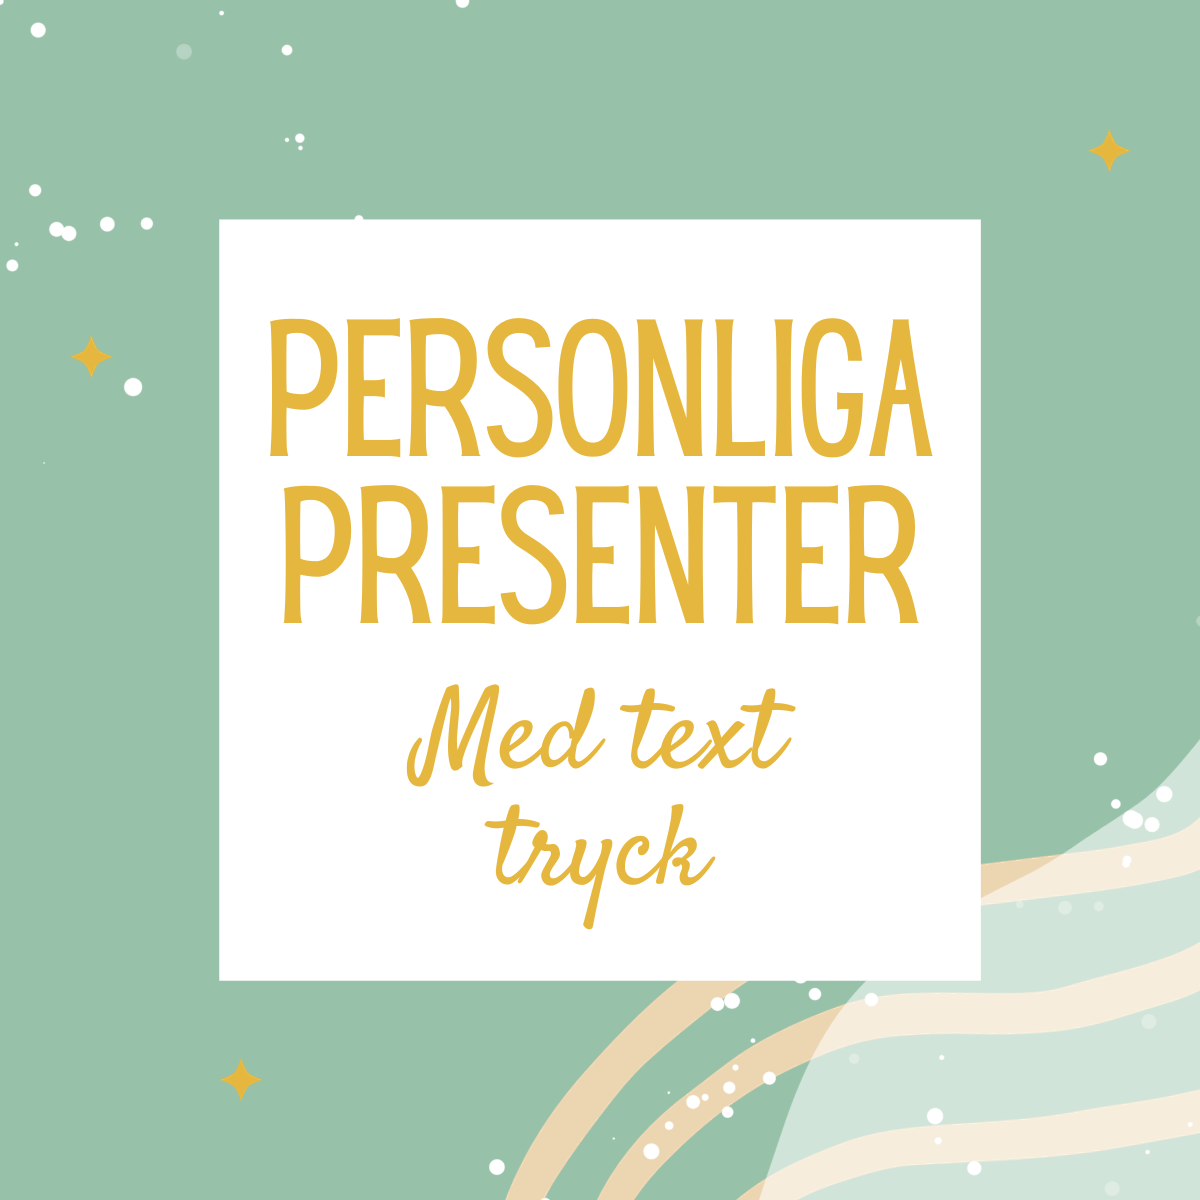 Personliga Presenter med text tryck